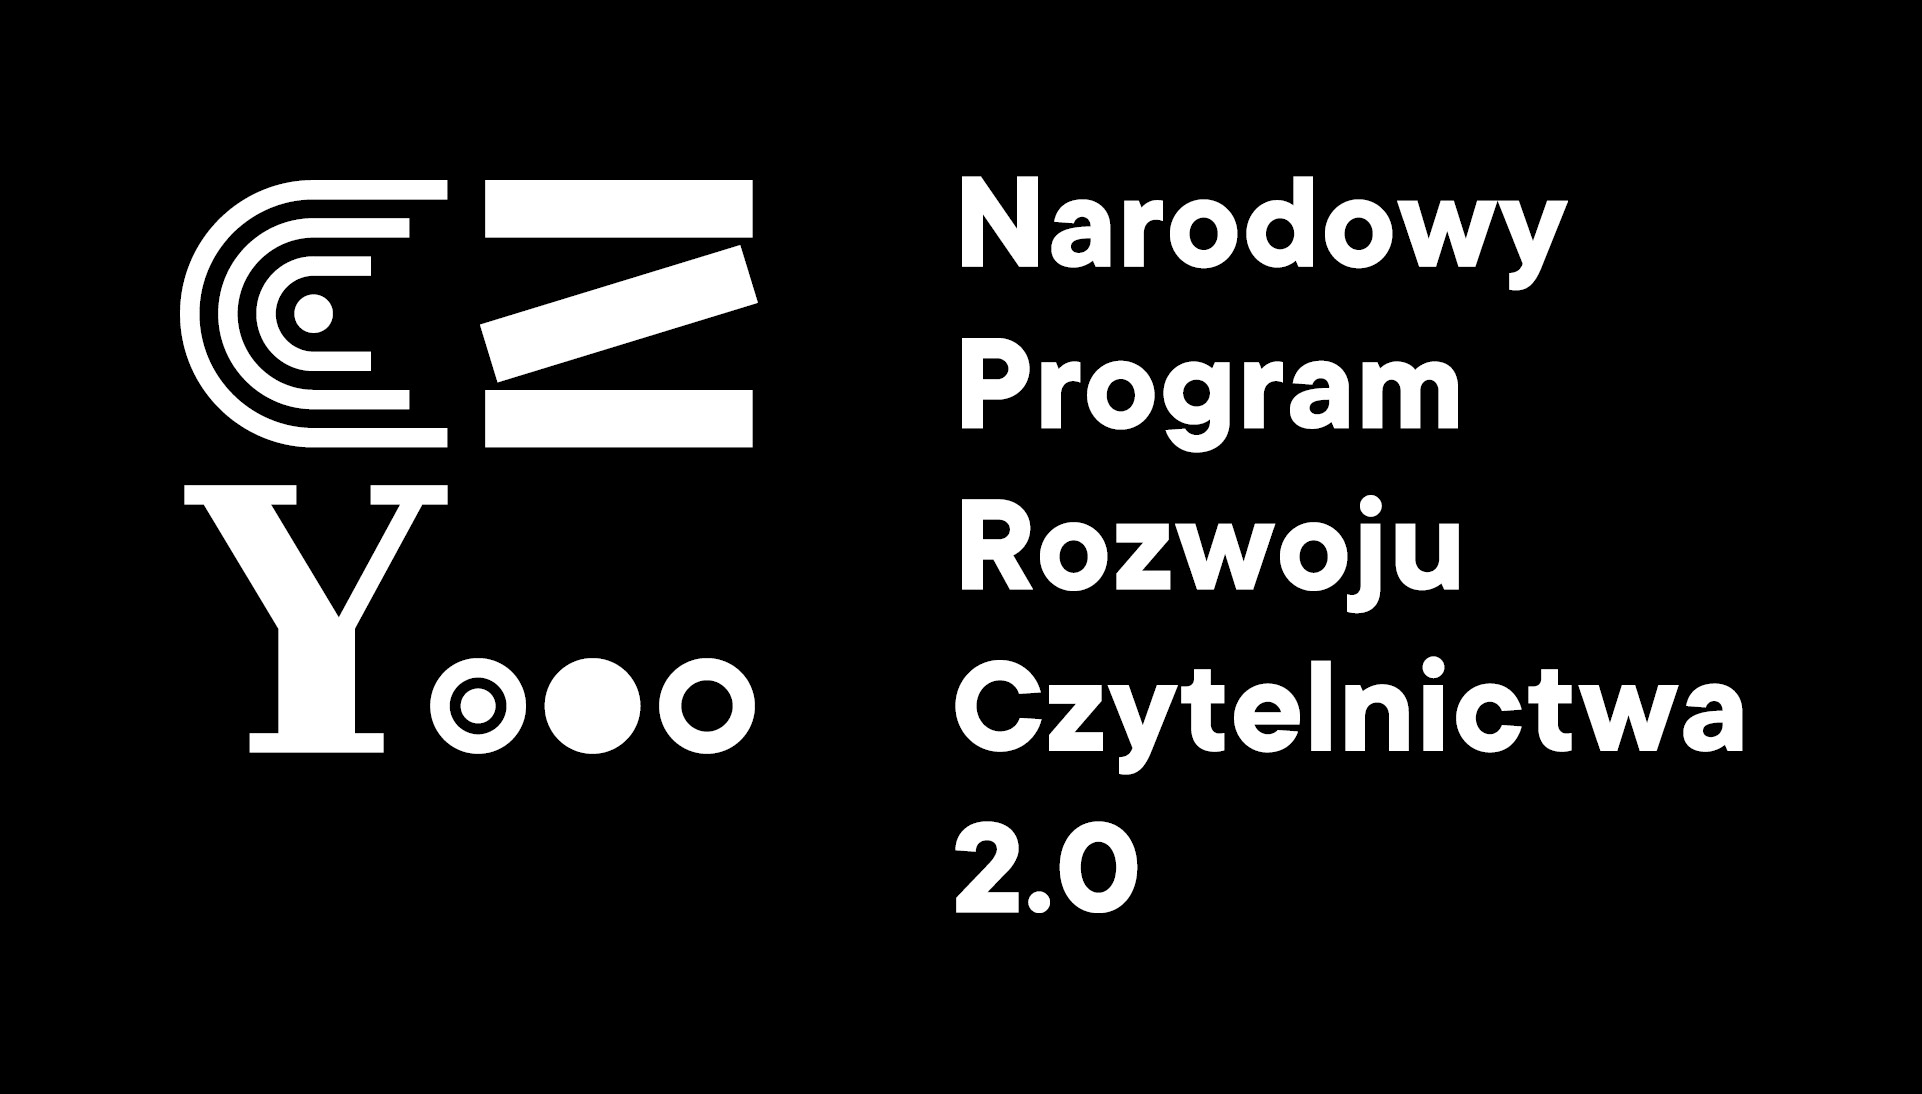  Logotyp Narodowego Programu Rozwoju Czytelnictwa 2.0 